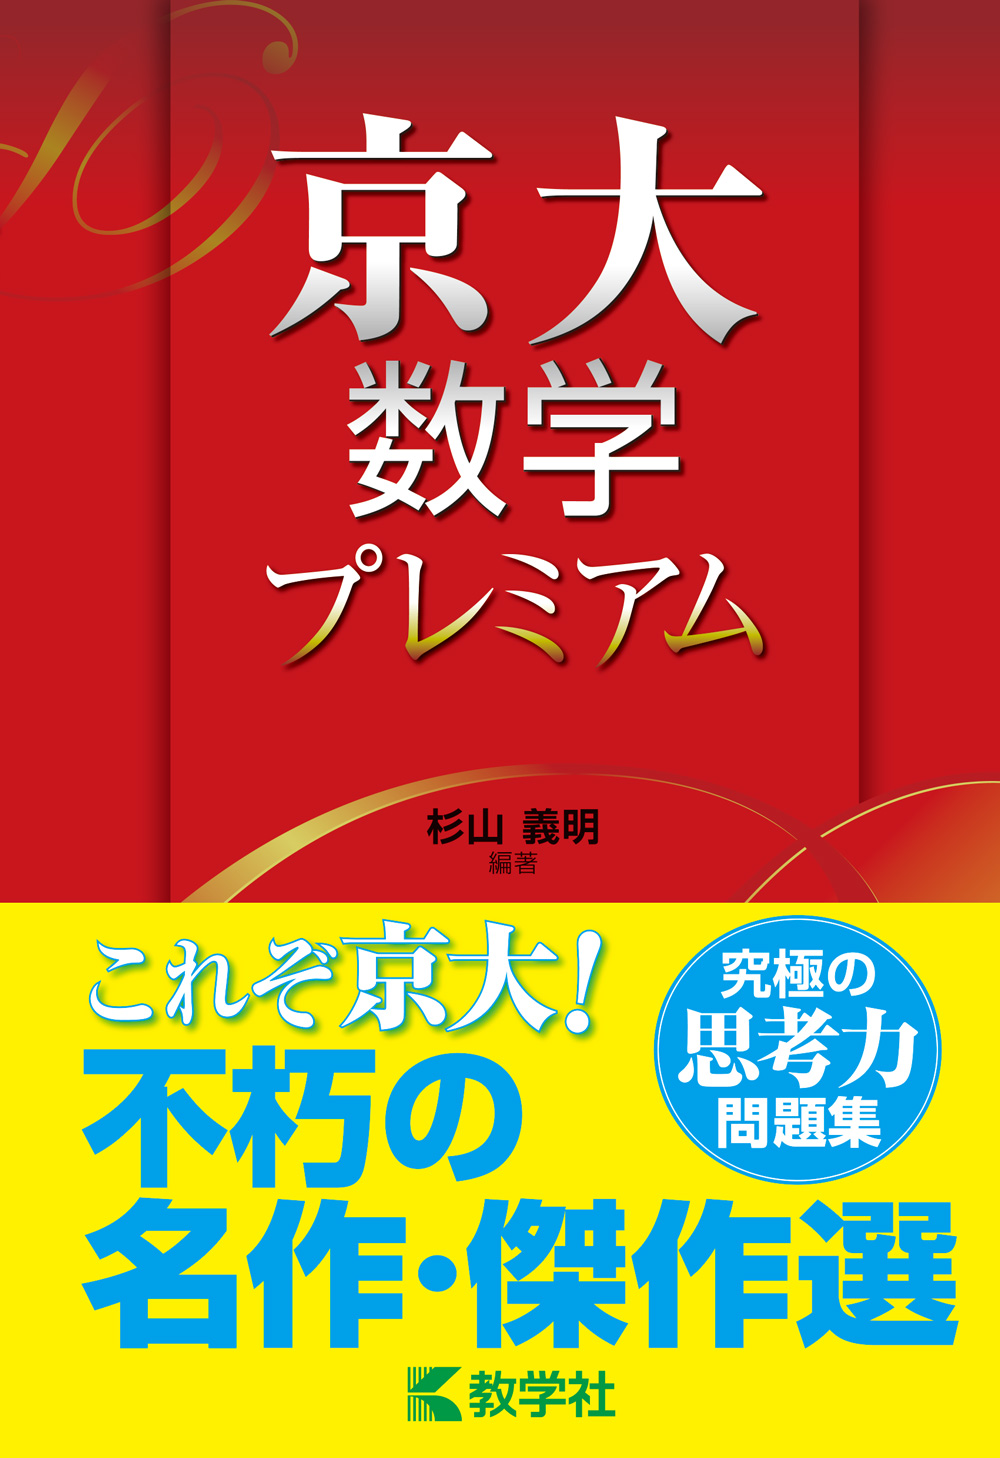 【新刊情報】『京大数学プレミアム』を11月末に刊行いたします。